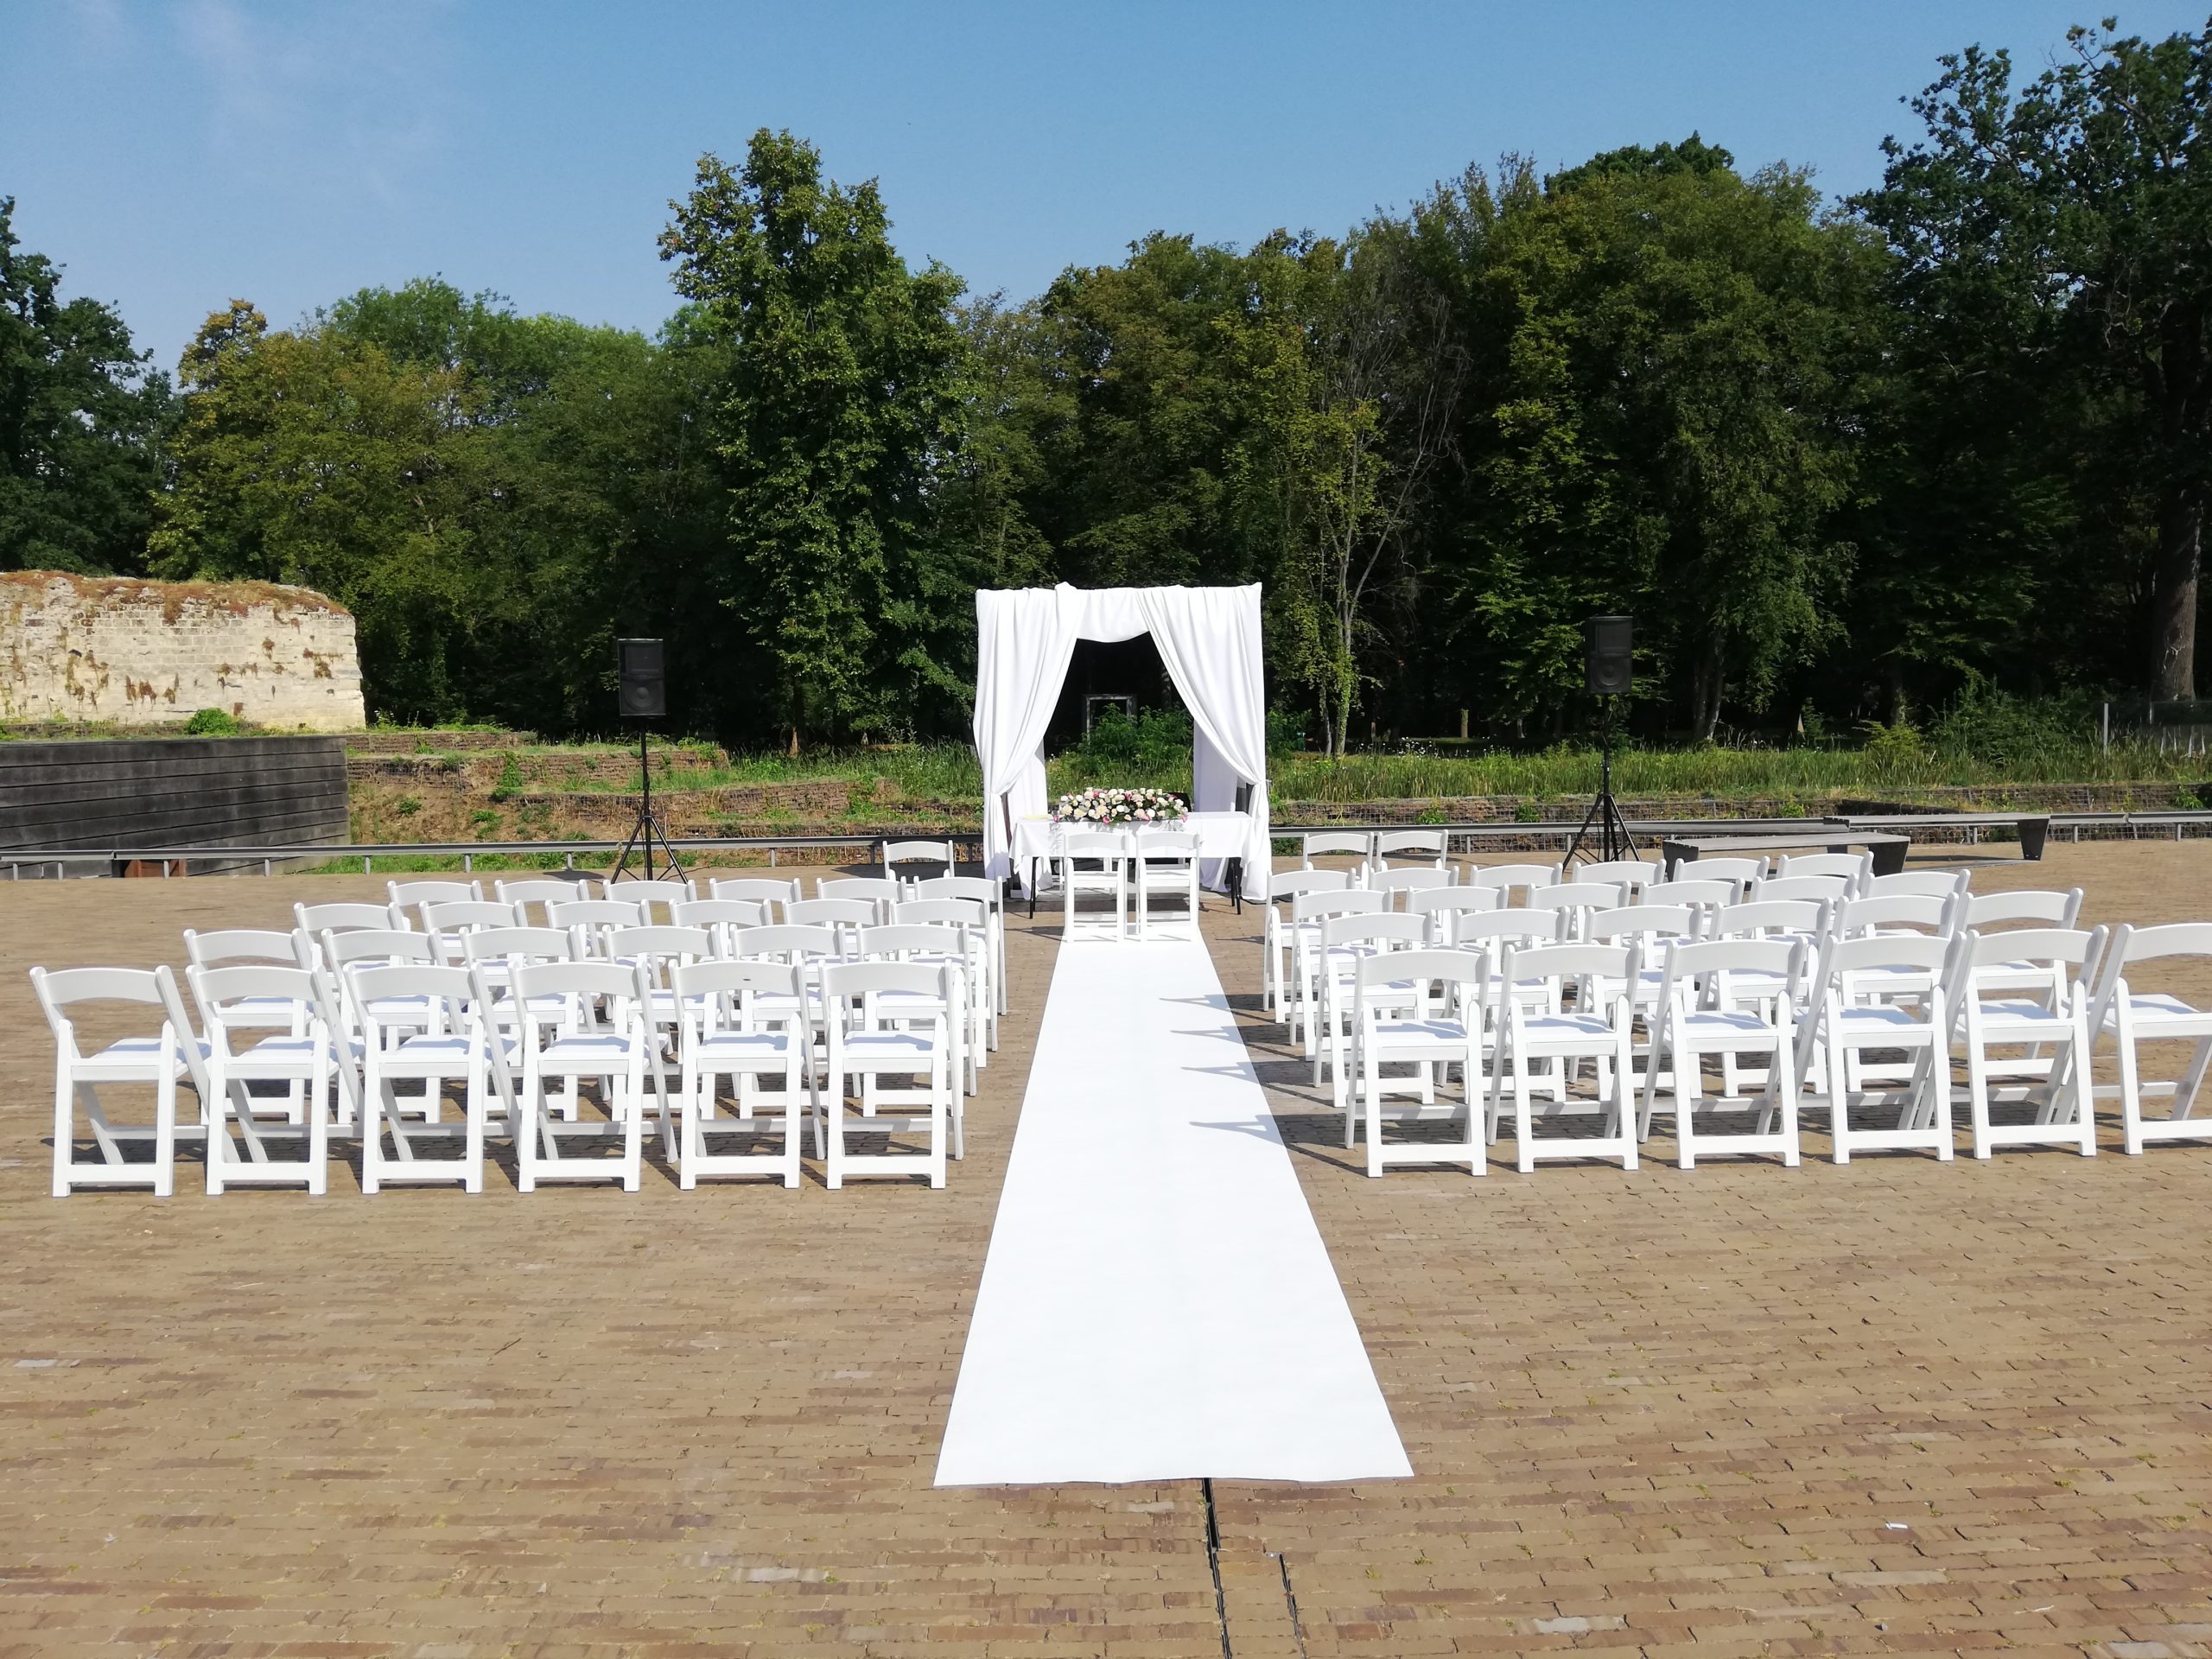 Huwelijk met onze witte weddingchairs als ceremonie opstelling